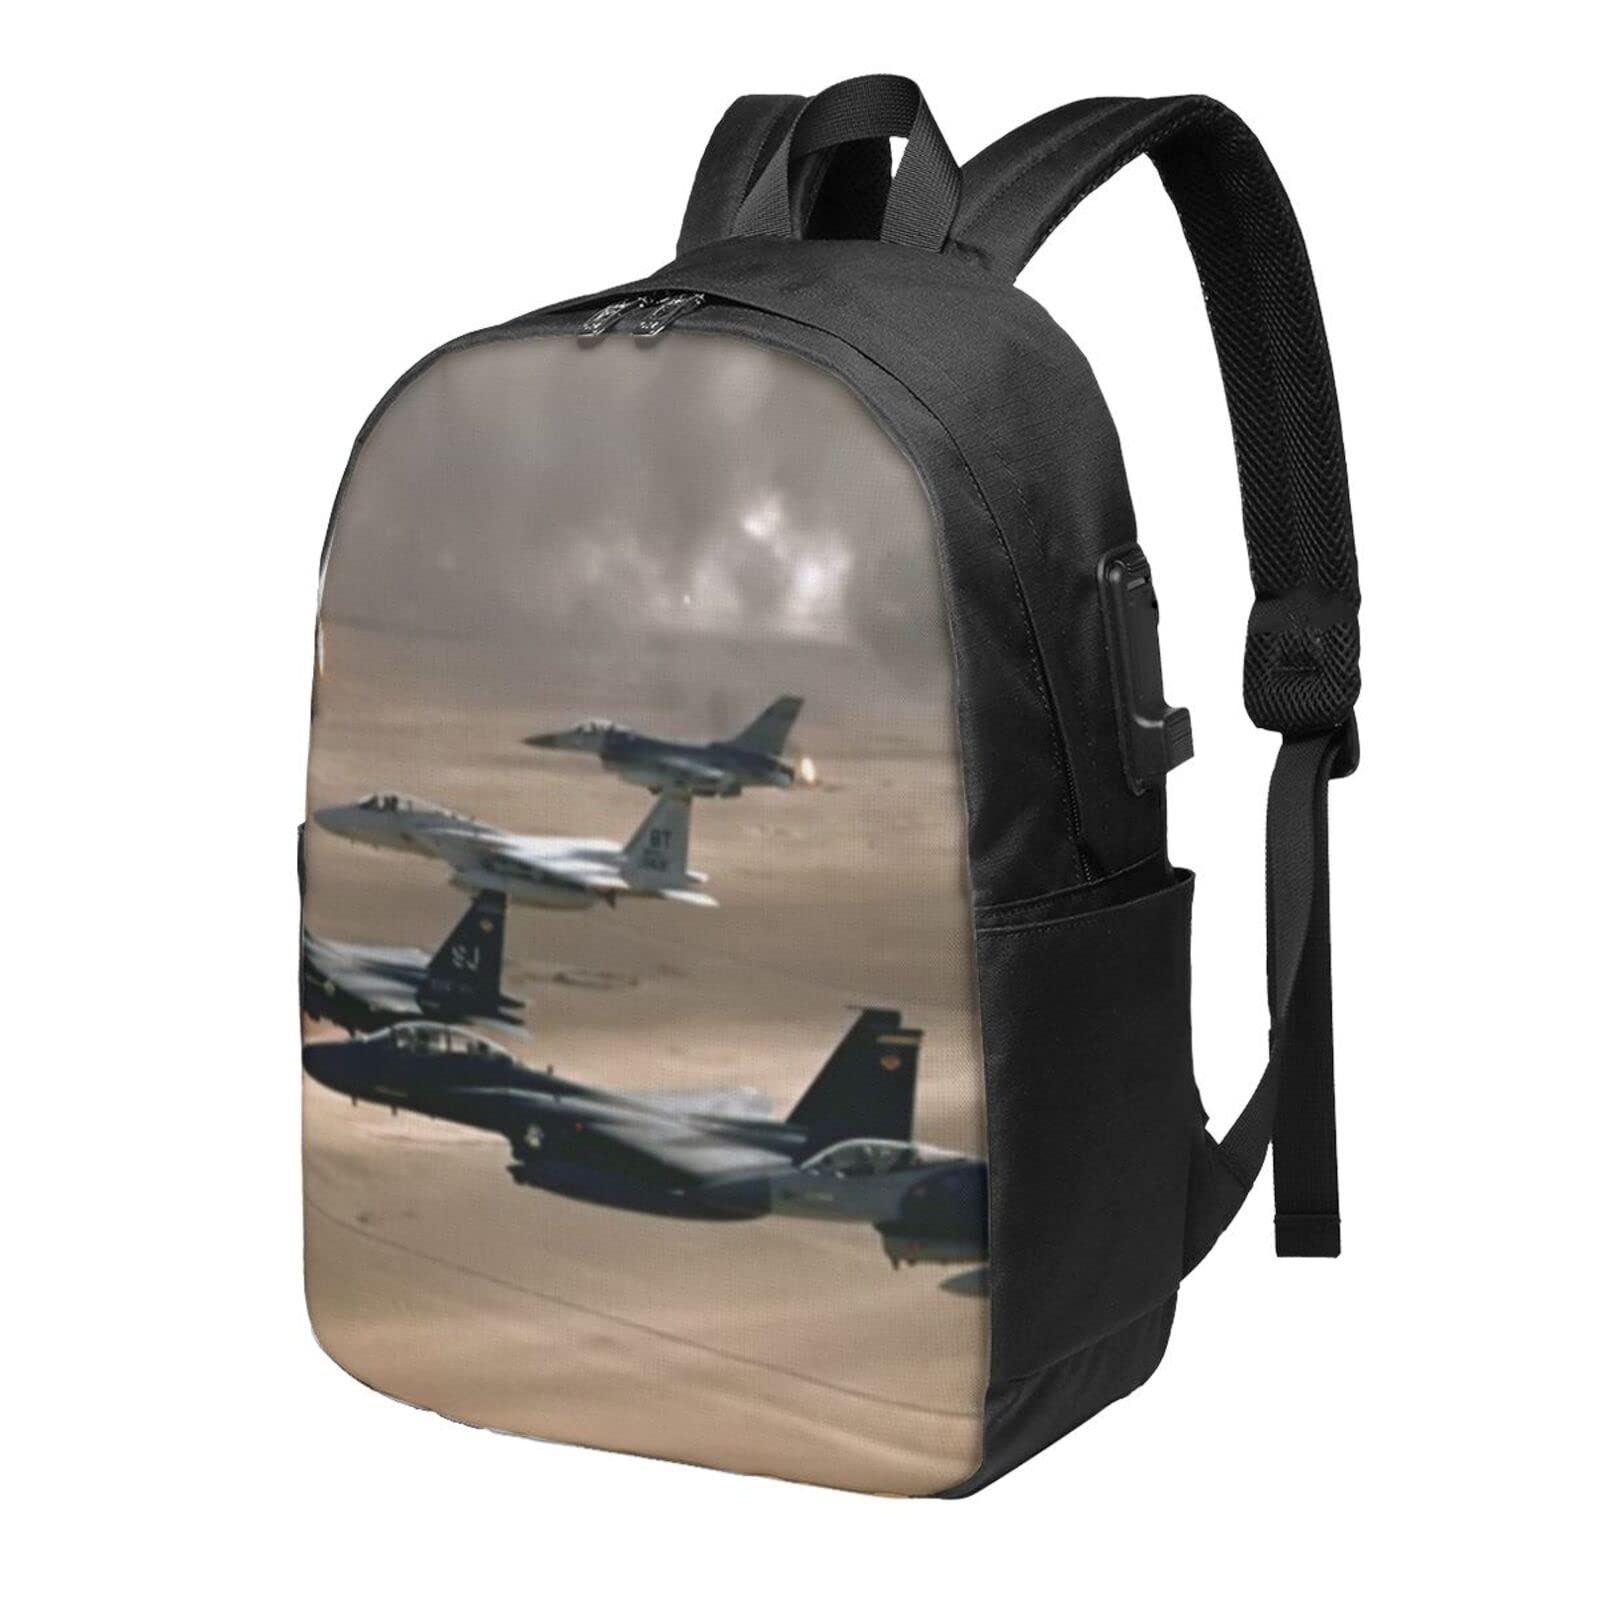 送料無料OUSIKA Jet Fighter Laptop Backpack With Usb Charging Port Water Resistant Casual Daypacks Travel Bag For Men Wome